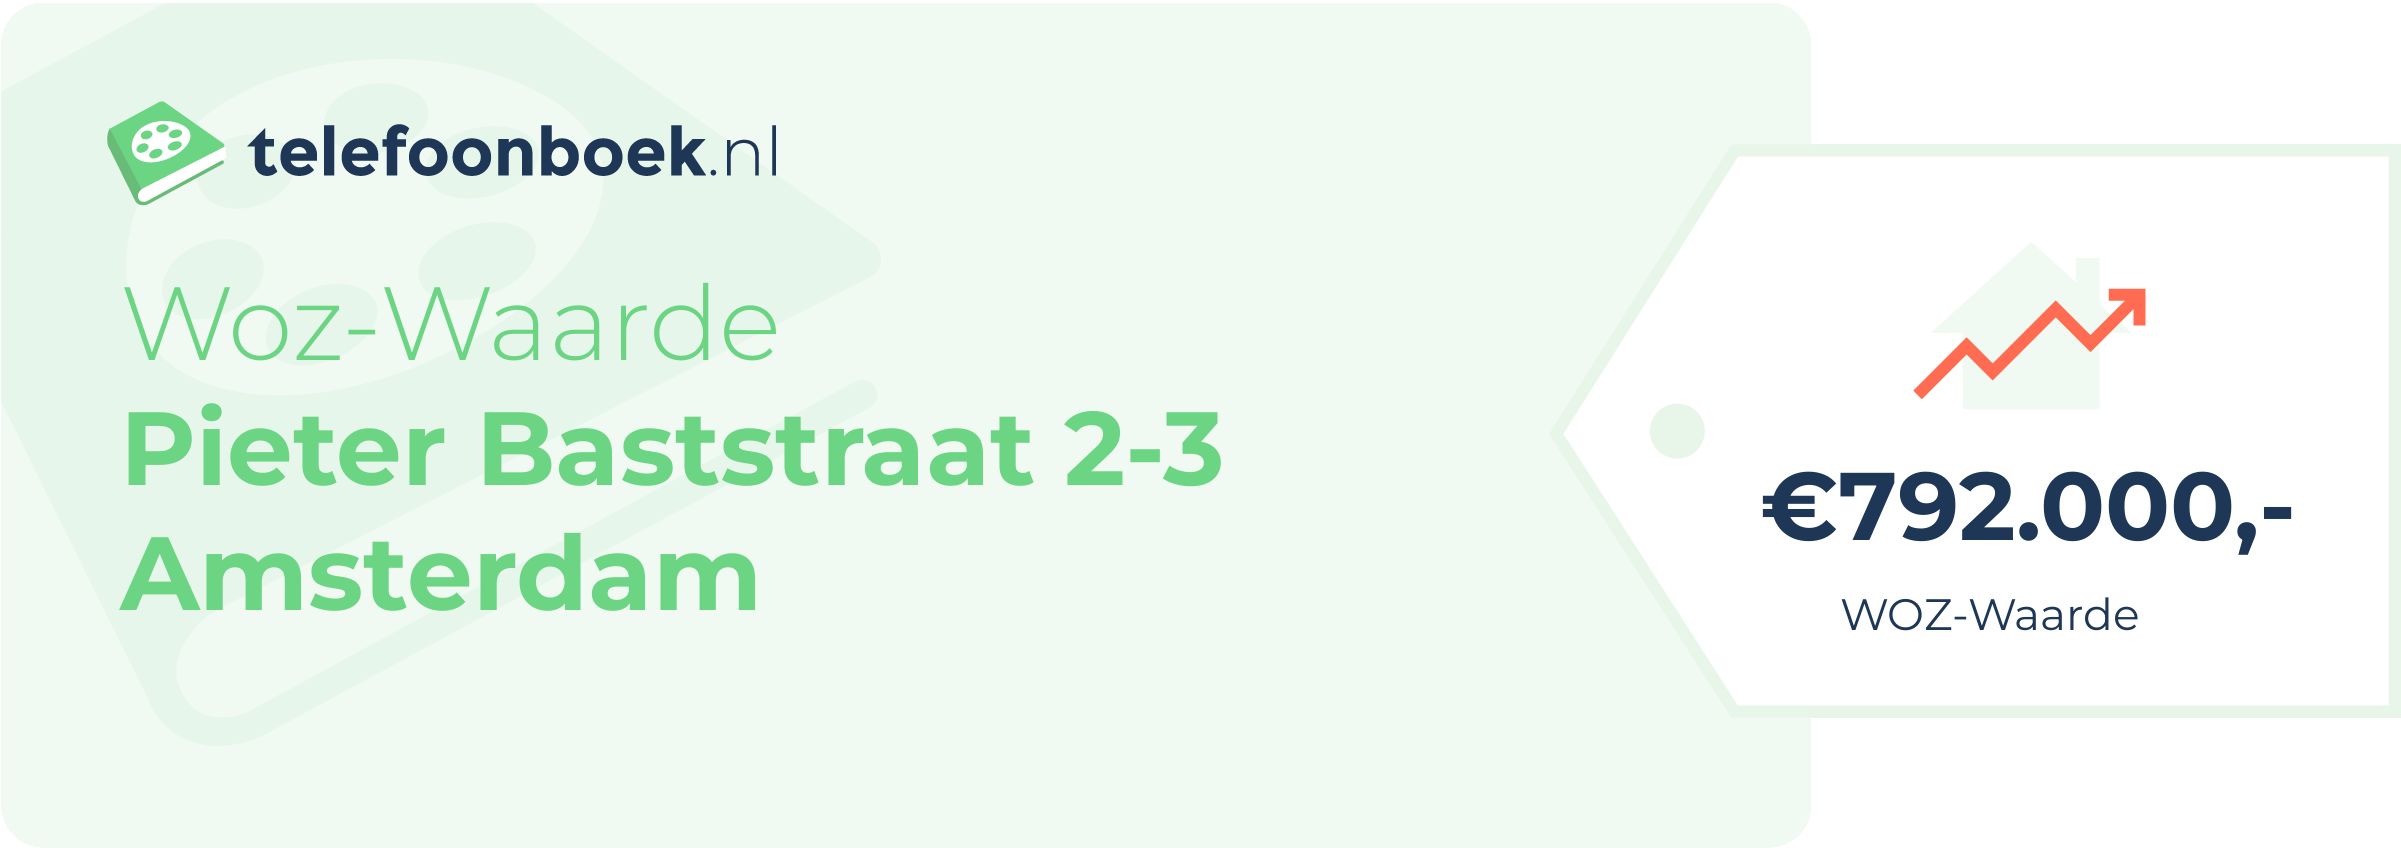 WOZ-waarde Pieter Baststraat 2-3 Amsterdam